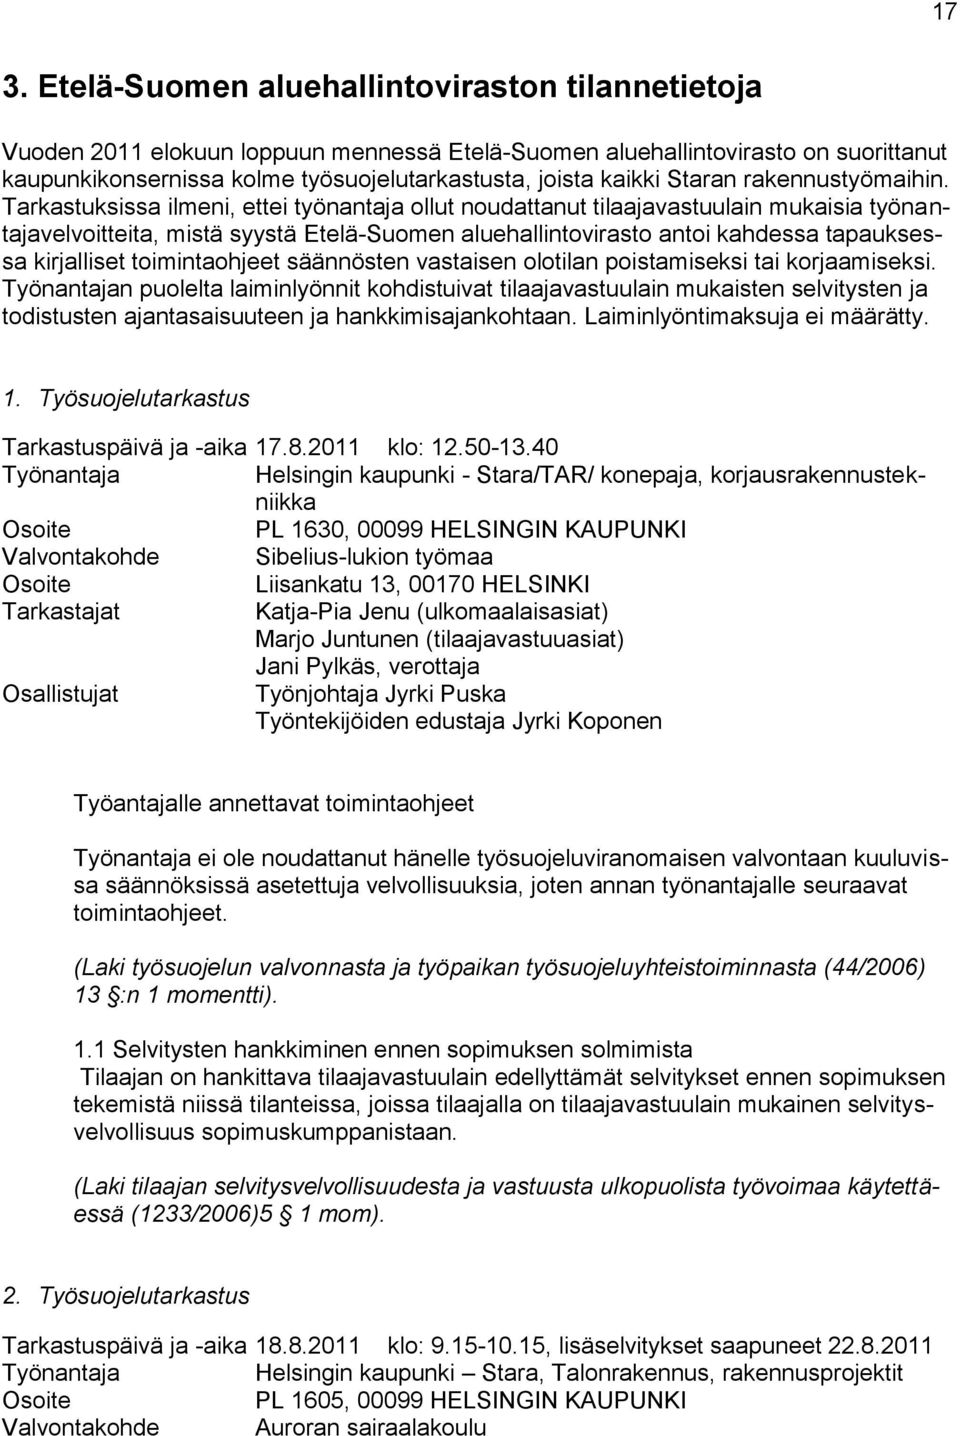 Tarkastuksissa ilmeni, ettei työnantaja ollut noudattanut tilaajavastuulain mukaisia työnantajavelvoitteita, mistä syystä Etelä-Suomen aluehallintovirasto antoi kahdessa tapauksessa kirjalliset